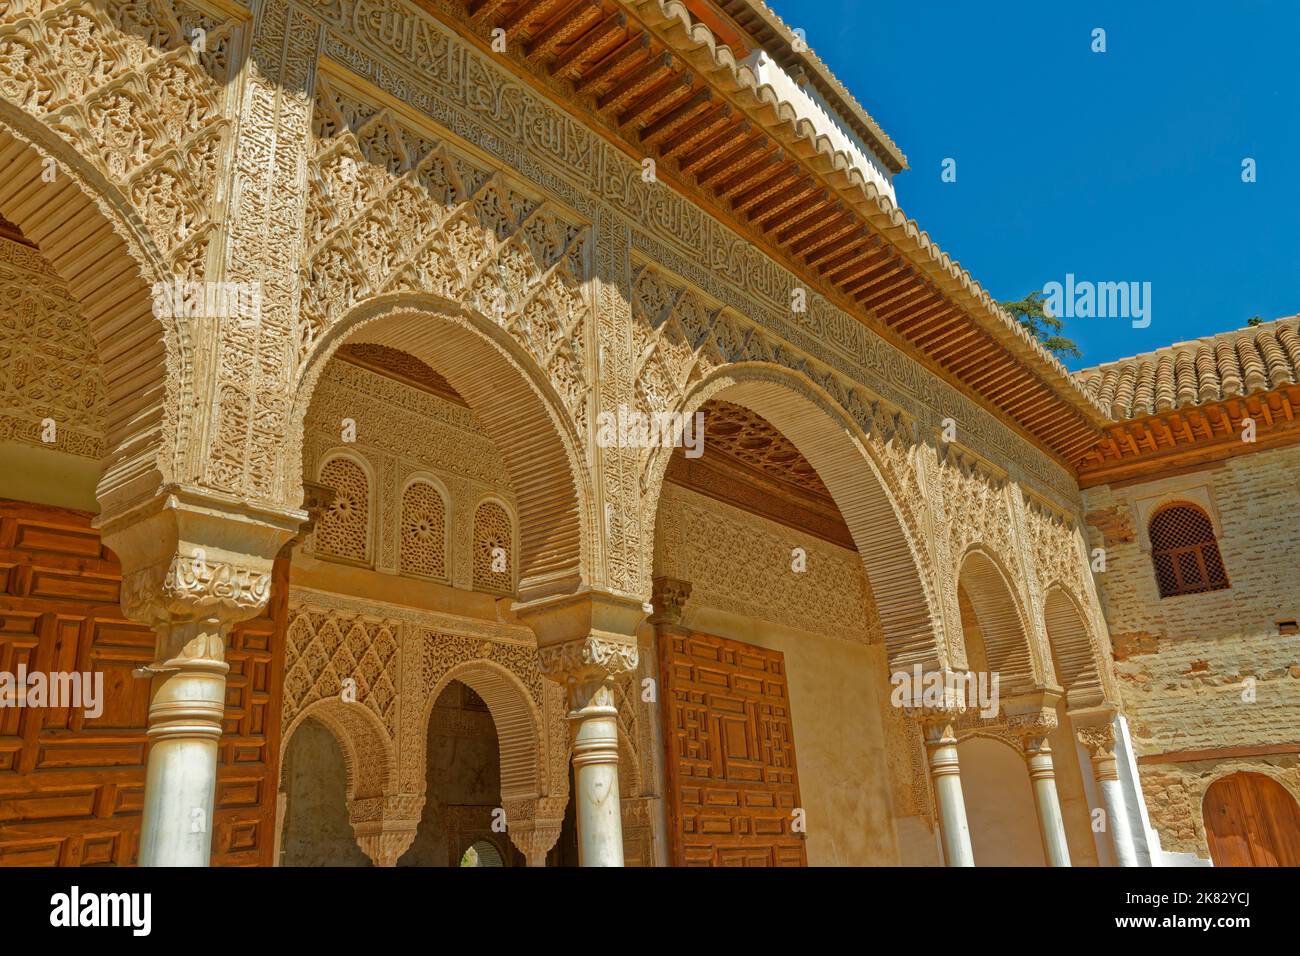 Dettaglio architettonico degli edifici del Palazzo presso i Giardini del Generalife presso il complesso del palazzo dell'Alhambra a Granada, Spagna. Foto Stock